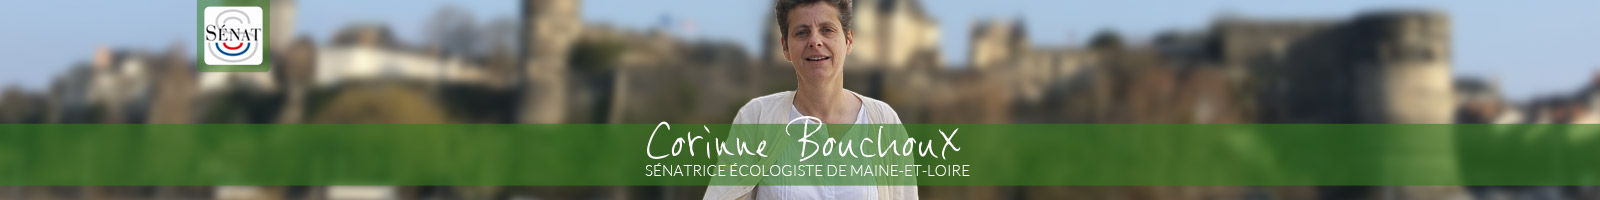 Corinne Bouchoux, Sénatrice écologiste de Maine et Loire